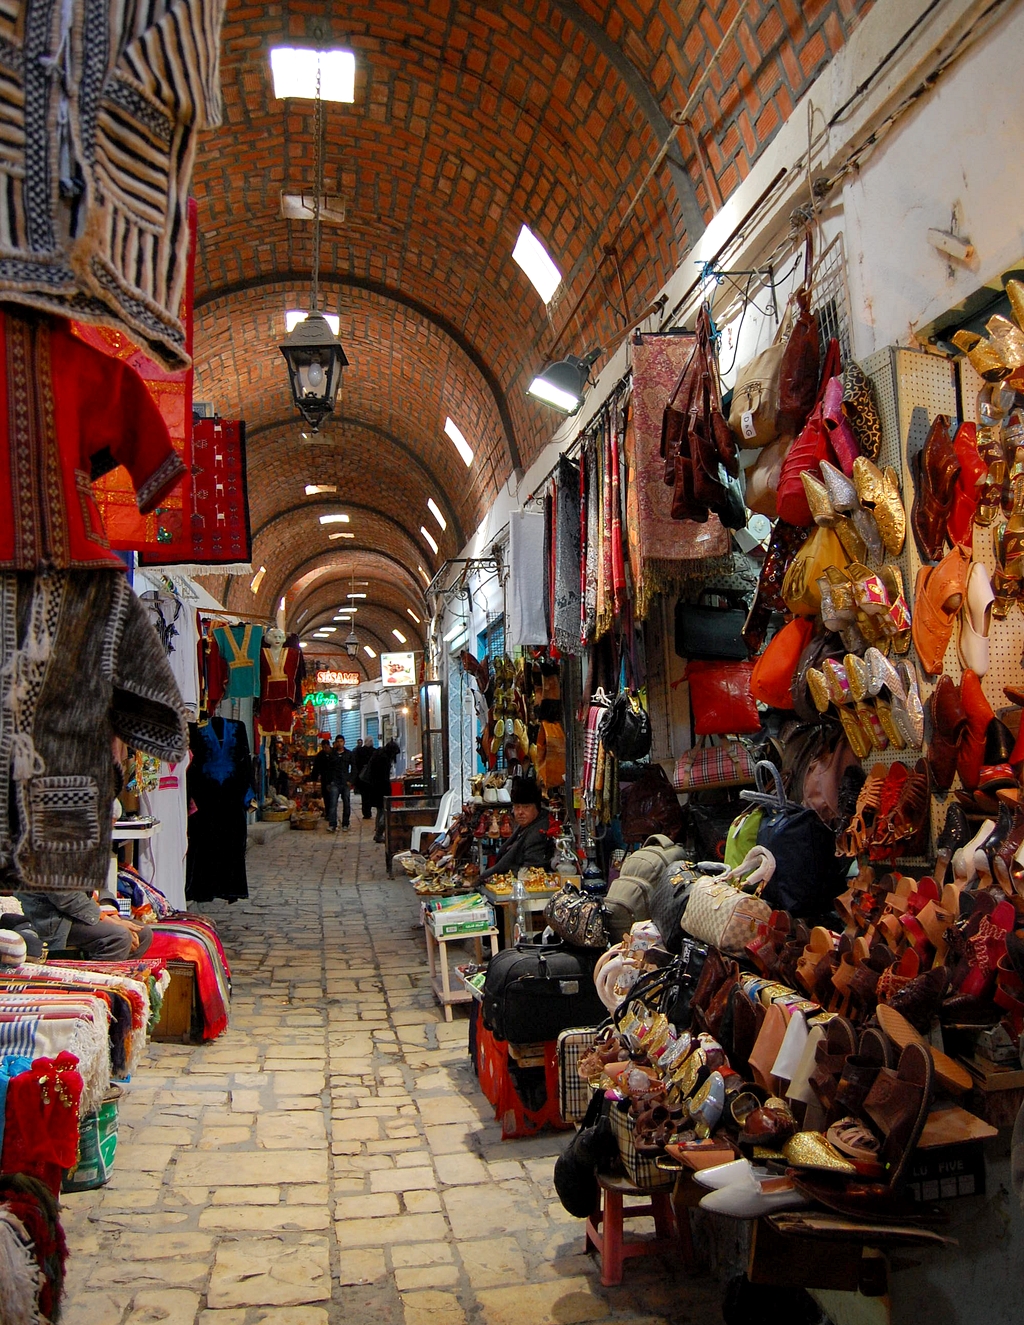 A turisták számára a legnagyobb izgalmat persze a bazár jelenti, amely a medina jelentős részét elfoglalja, helyenként fedett utcákkal. Az alku itt kötelező